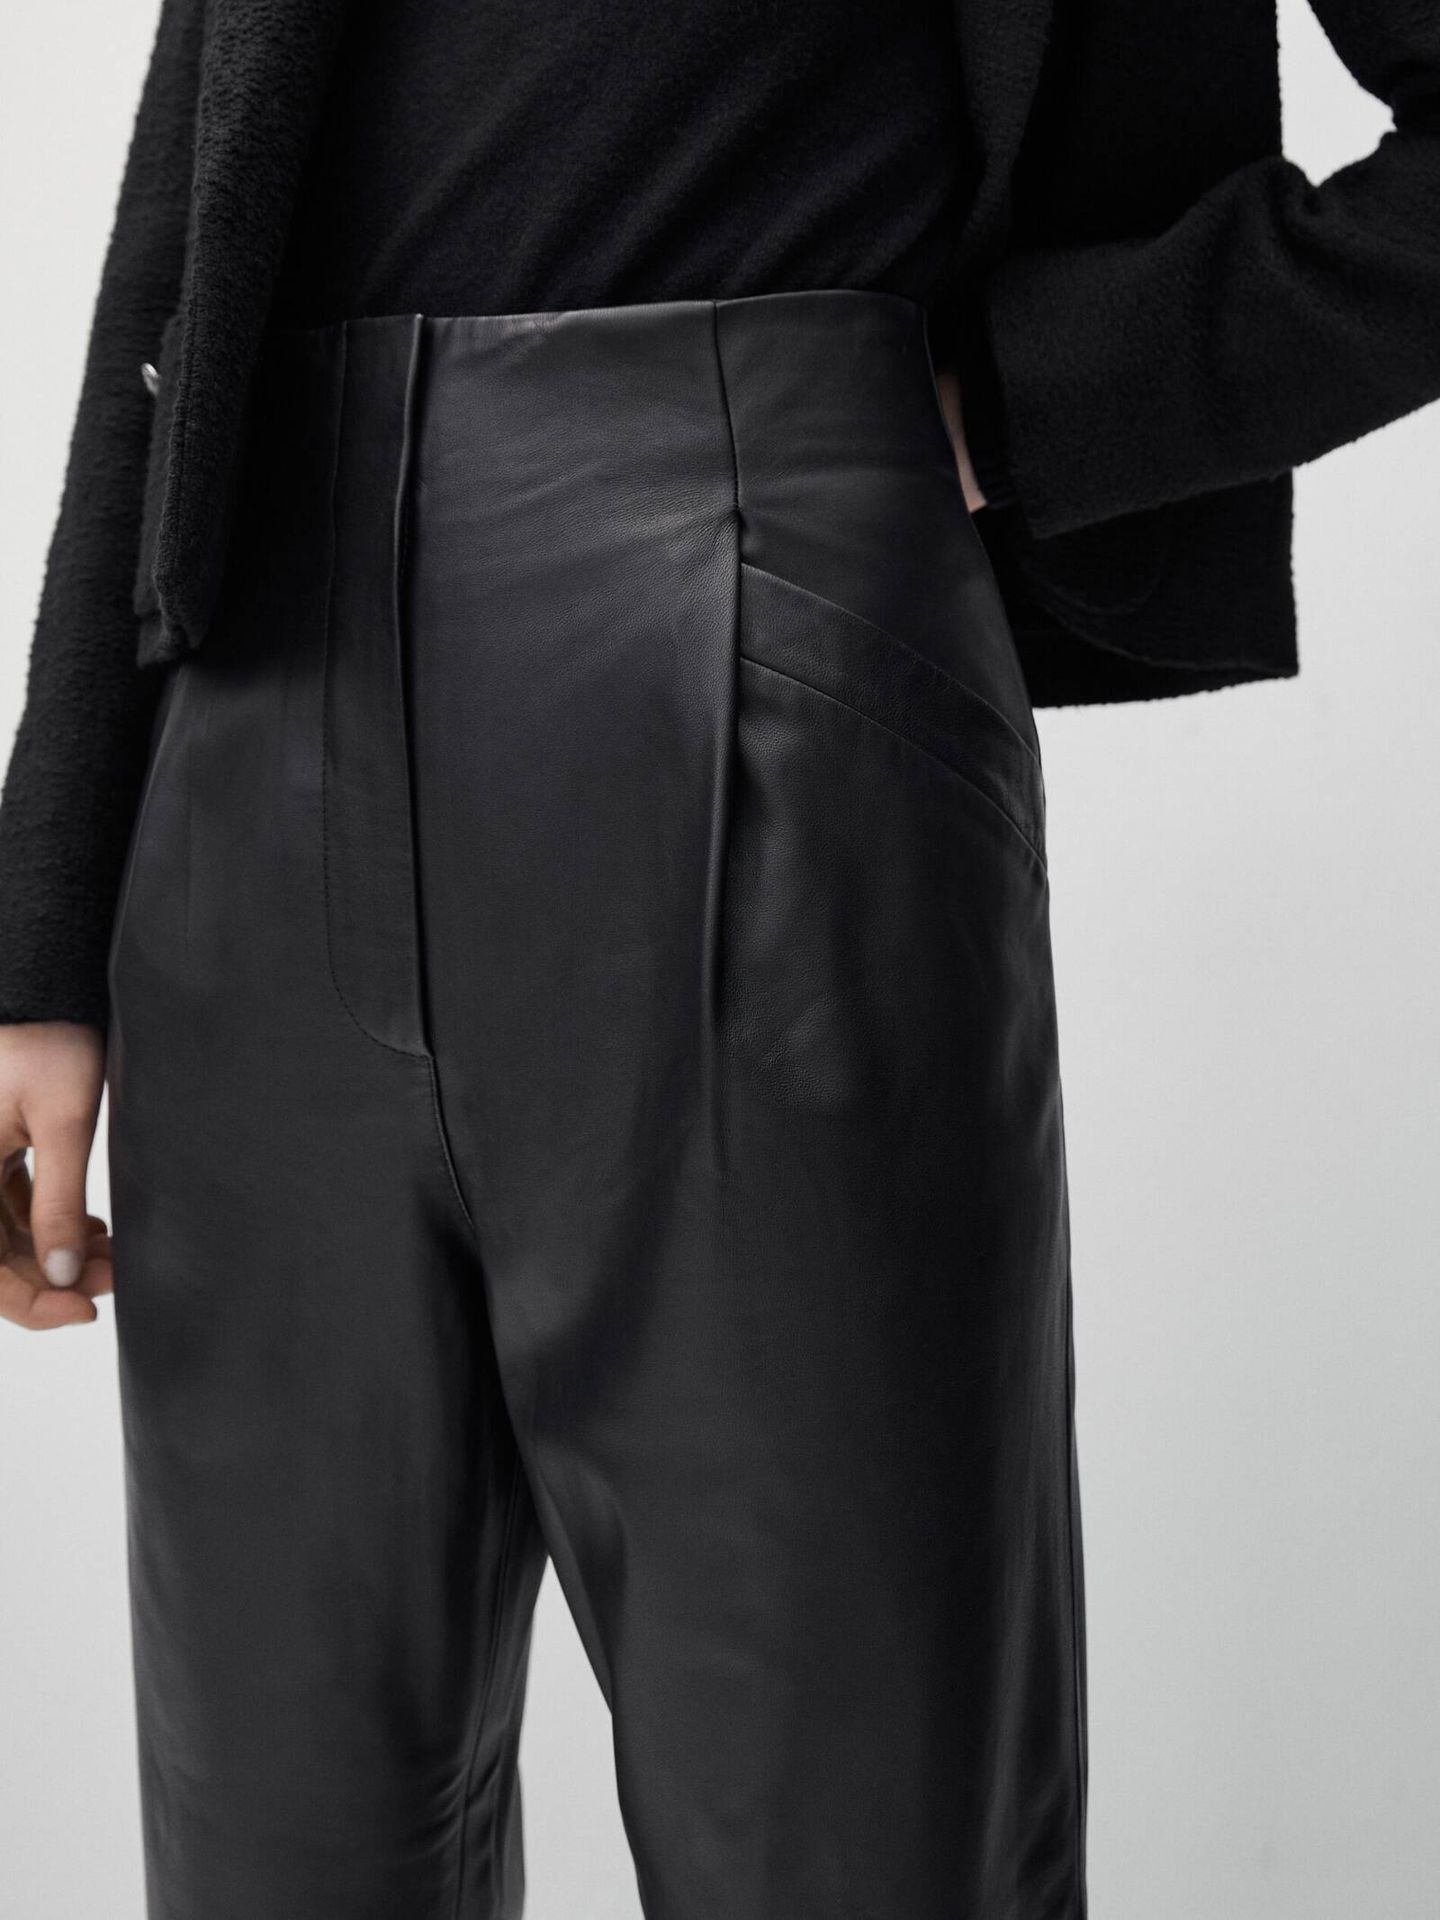 Descubre las prendas de cuero negro de Massimo Dutti para un armario atemporal pero cool. (Massimo Dutti/Cortesía)